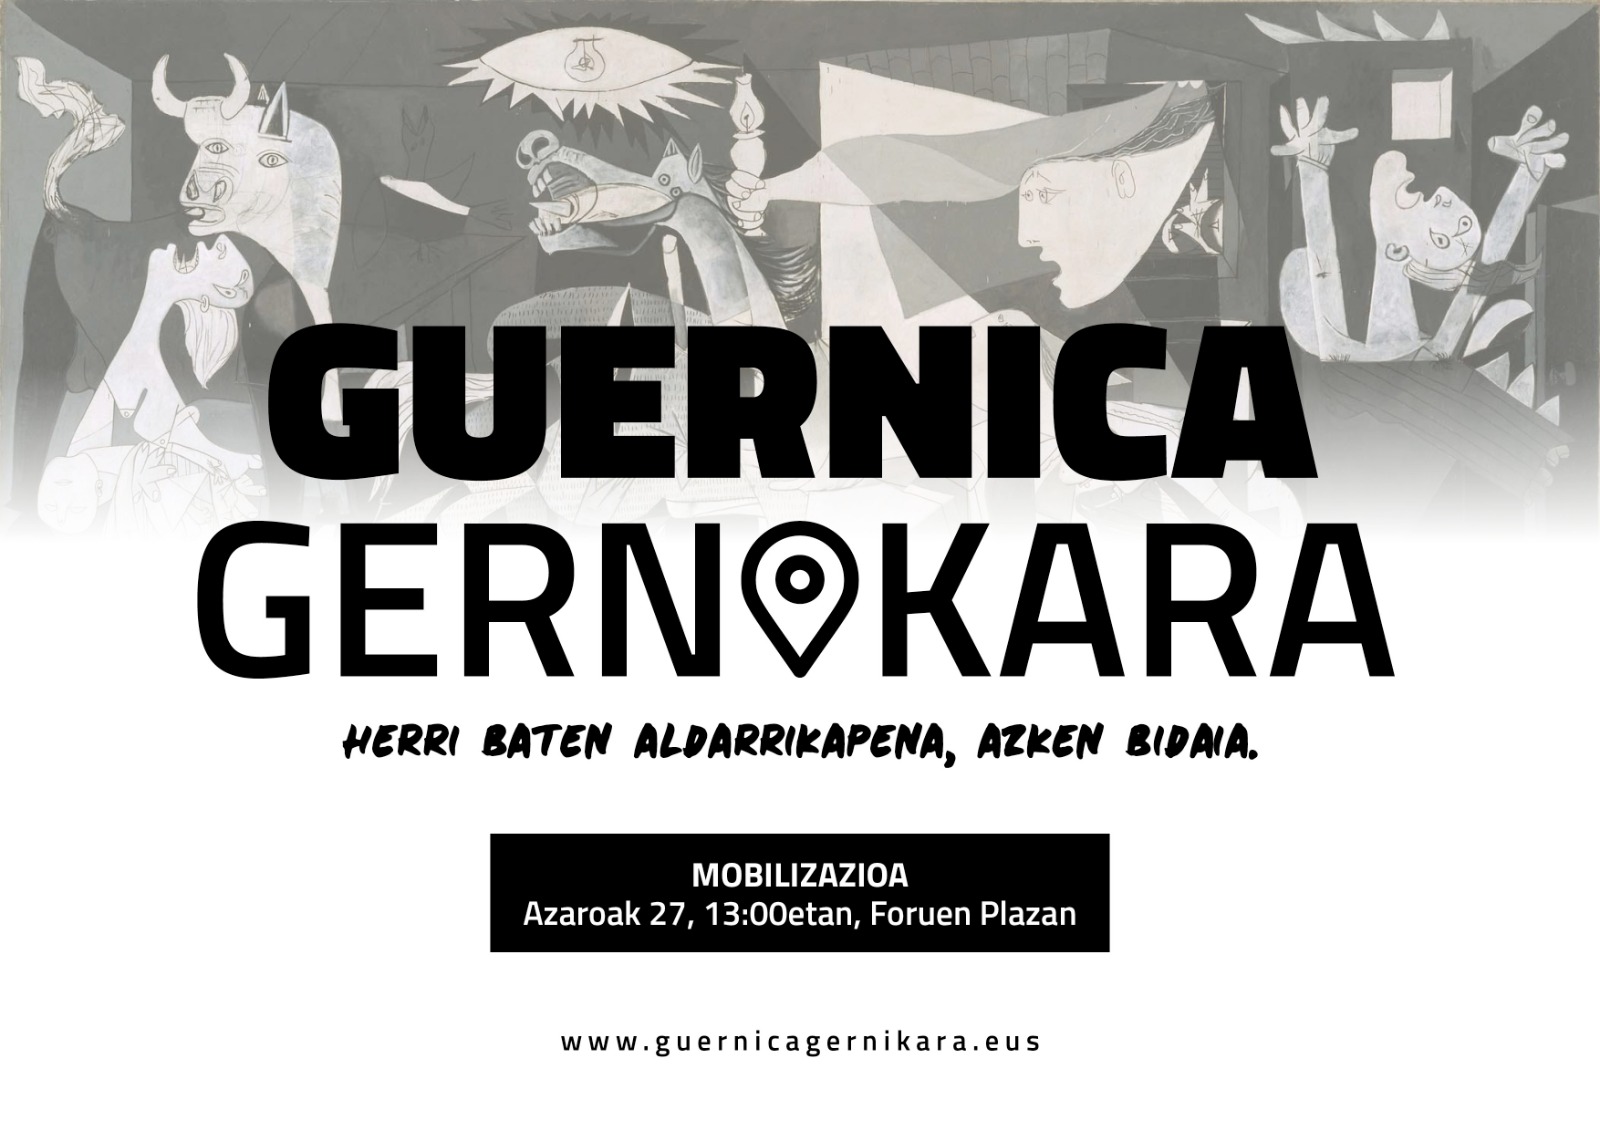 Guernica Gernikara, aldarrikapen batean arrazoiak